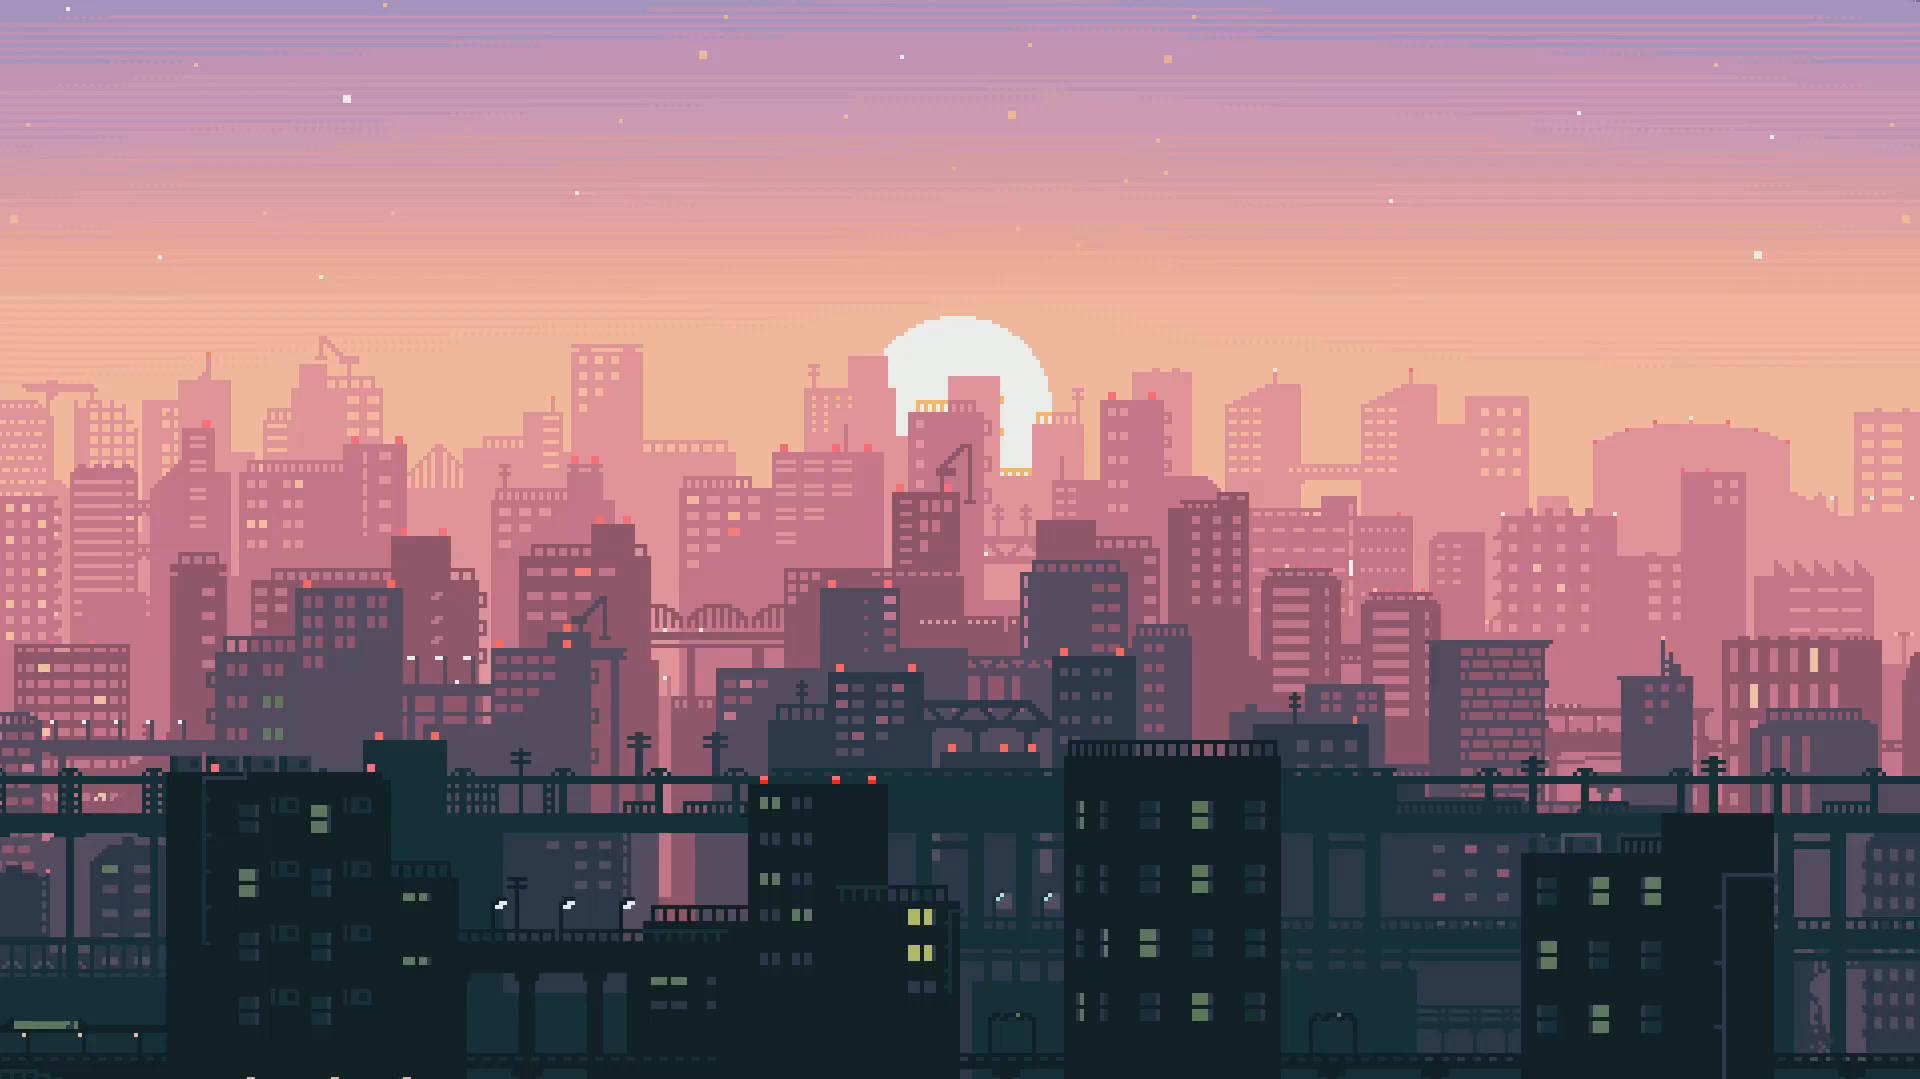 Aesthetic Pixel Art City Skyscrapers Wallpaper